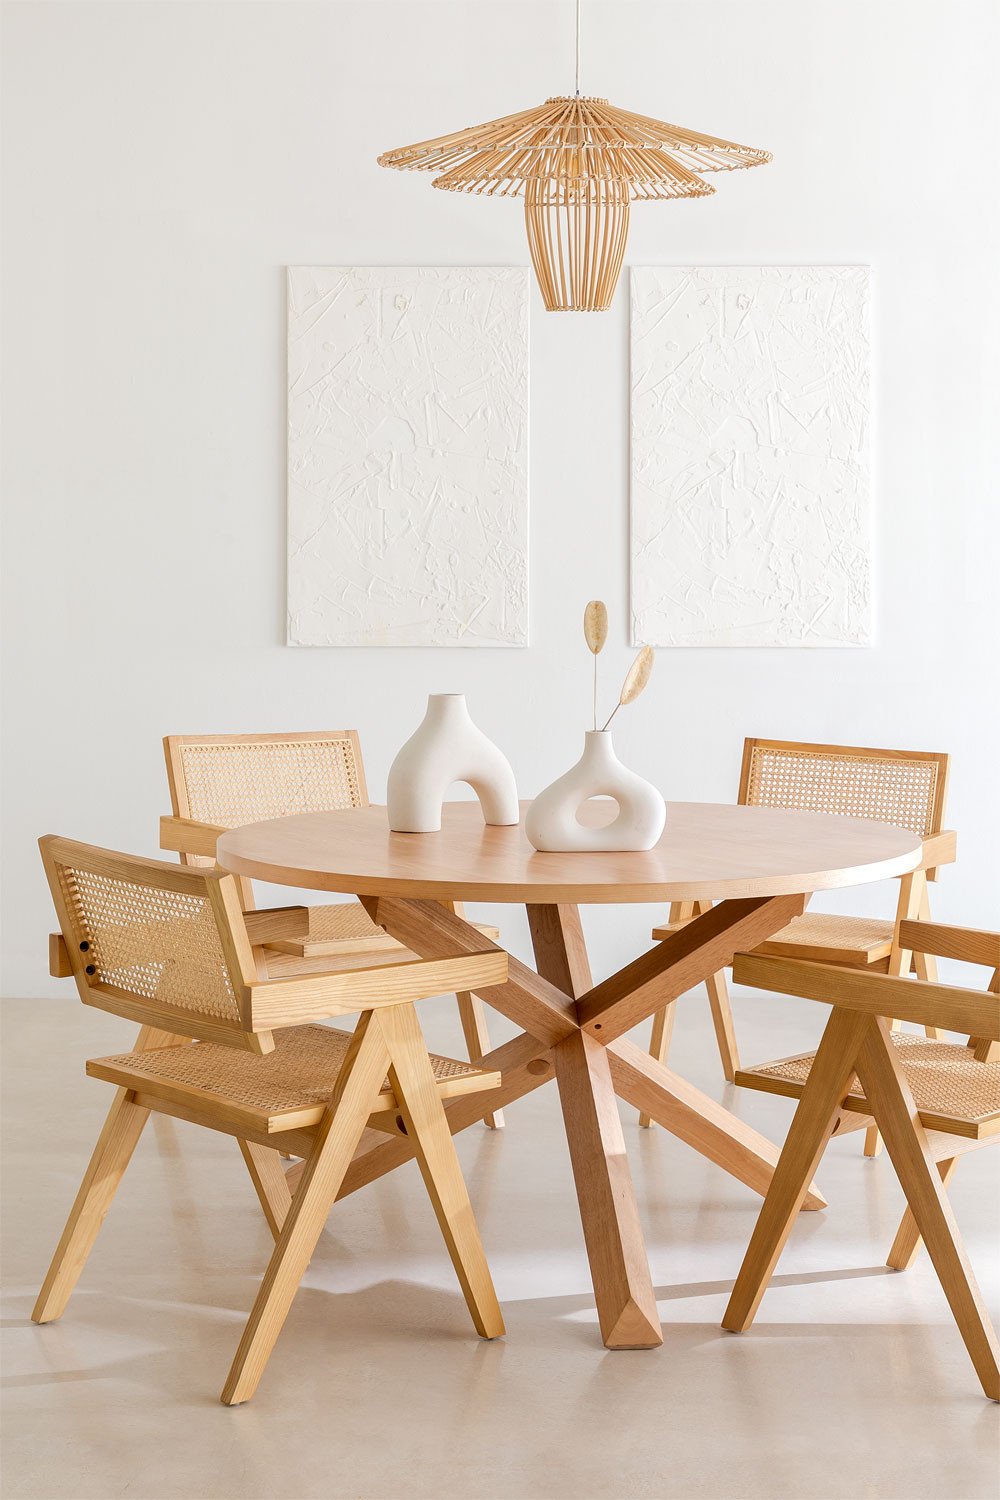 Ronde eettafelset in MDF en hout (Ø120 cm) Mieren en 4 stoelen met armleuningen in hout Lali Style, galerij beeld 1